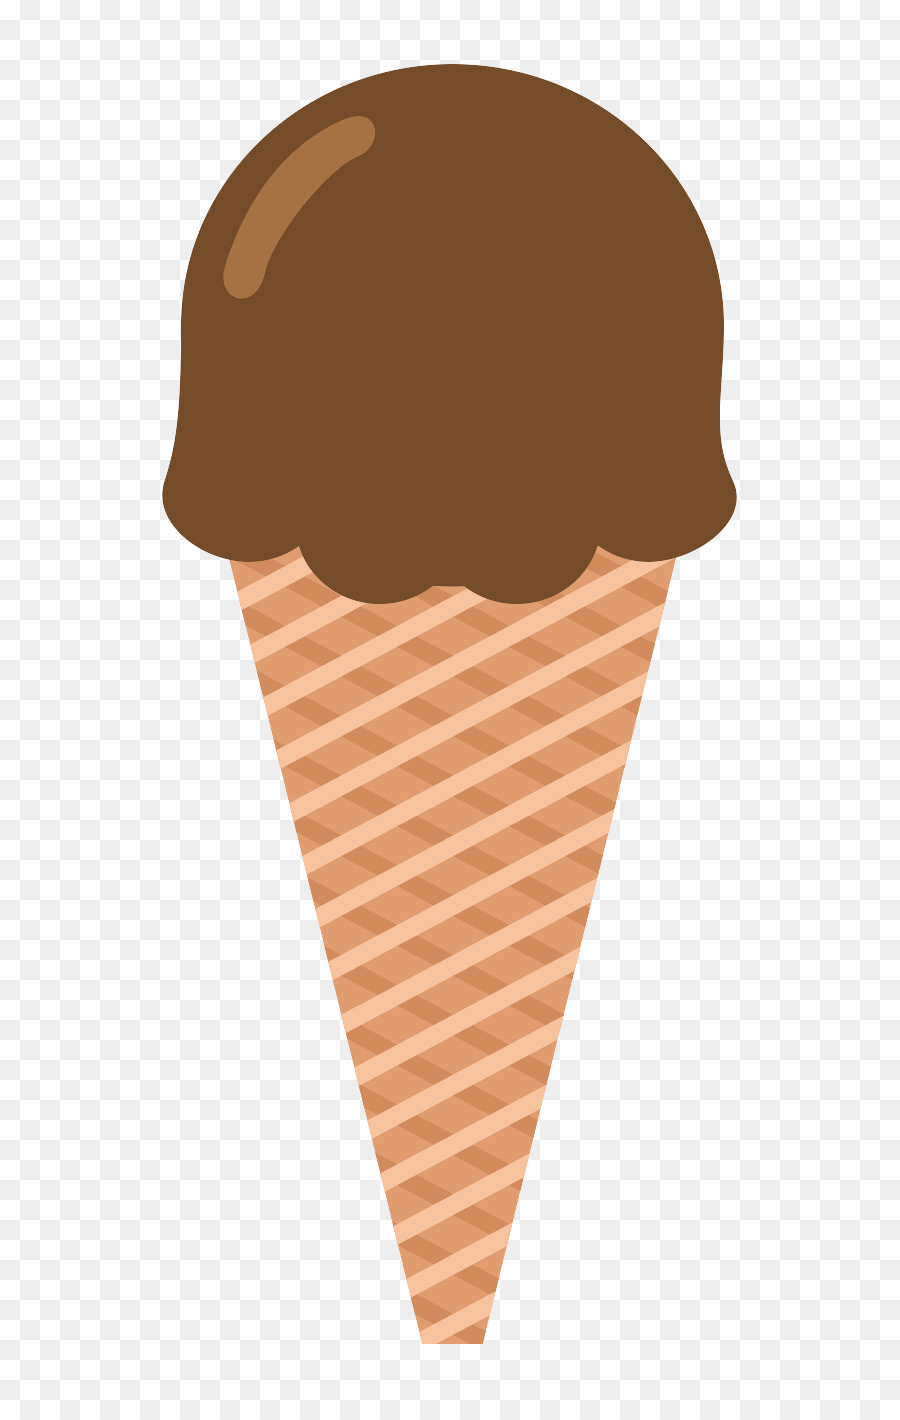 ice-cream-cone # 152914